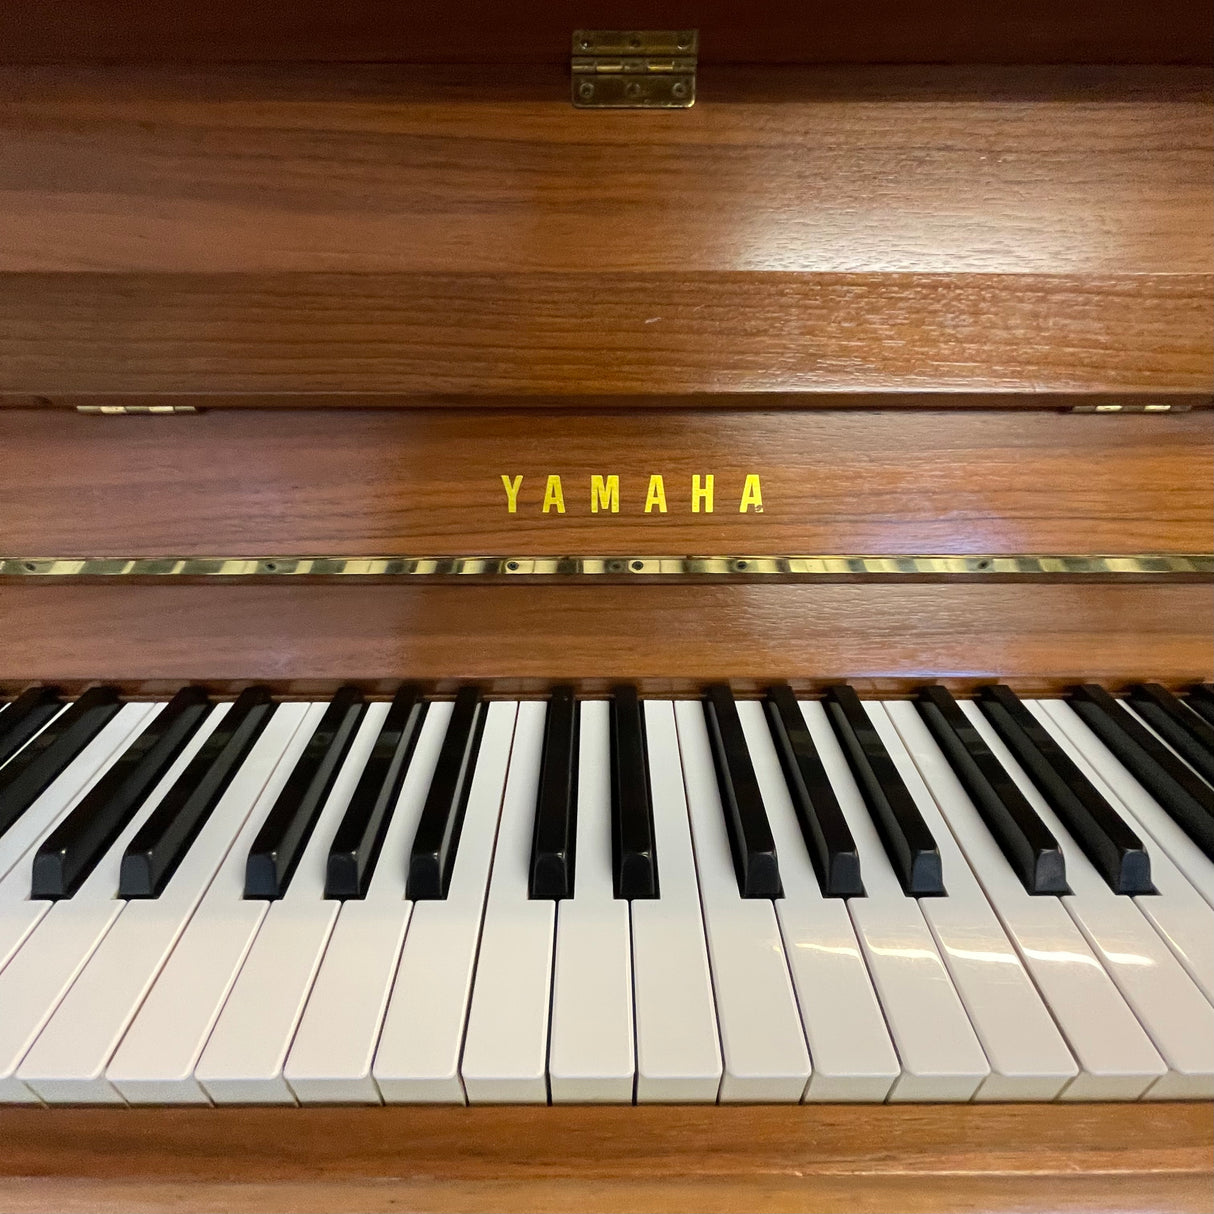 Yamaha C-108 Klavier Nussbaum hell Bj. 1980 sehr guter Zustand - made in Japan (gebraucht) - Musik-Ebert Gmbh